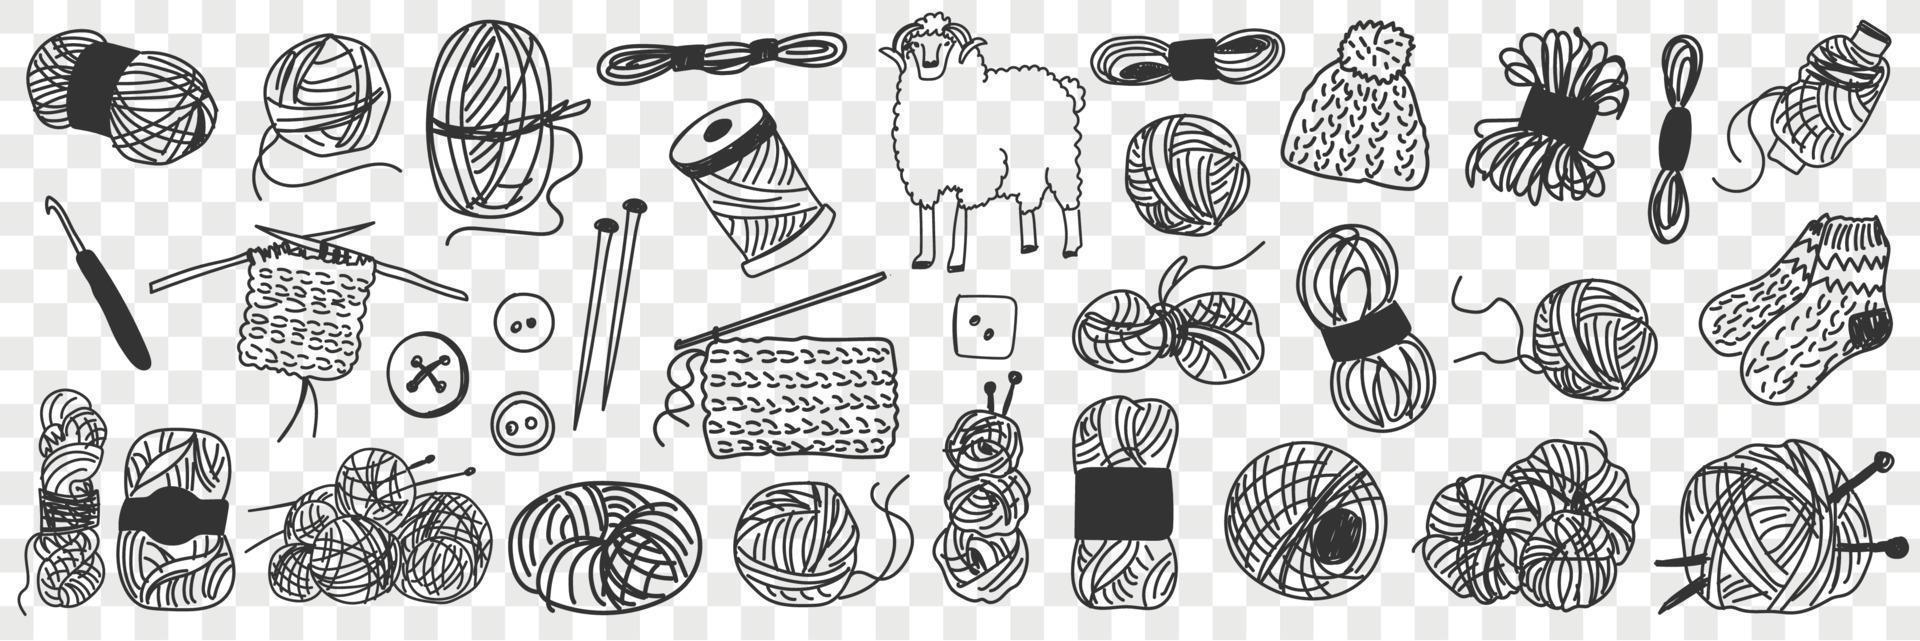 producción de lana garabatear colocar. colección de mano dibujado lana para tejido de punto y de coser y oveja para corte varios aislado en transparente antecedentes vector